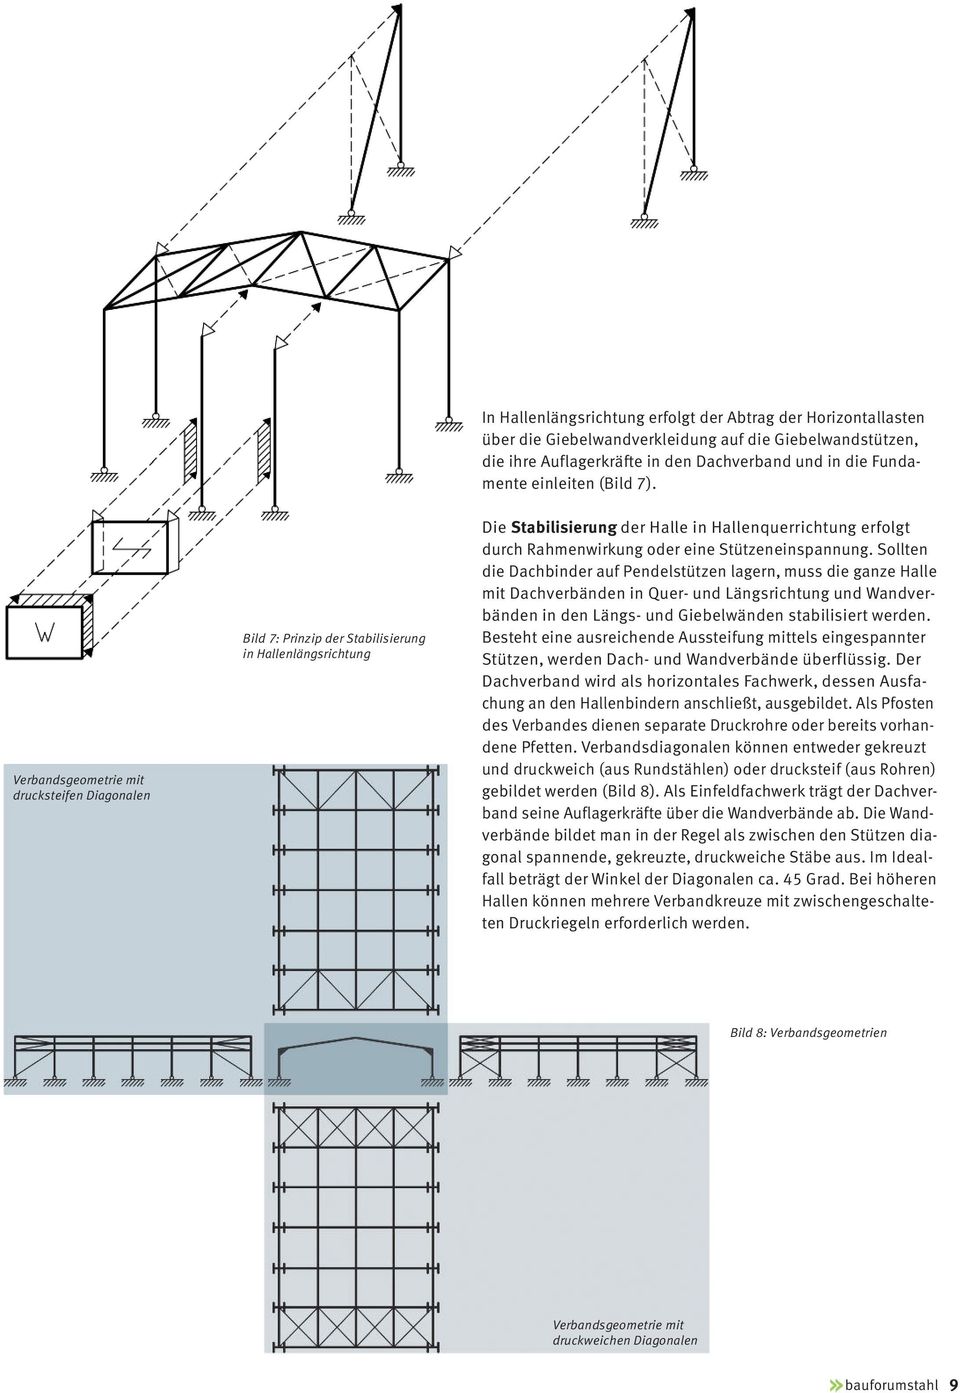 Verbandsgeometrie mit drucksteifen Diagonalen Bild 7: Prinzip der Stabilisierung in Hallenlängsrichtung Die Stabilisierung der Halle in Hallenquerrichtung erfolgt durch Rahmenwirkung oder eine